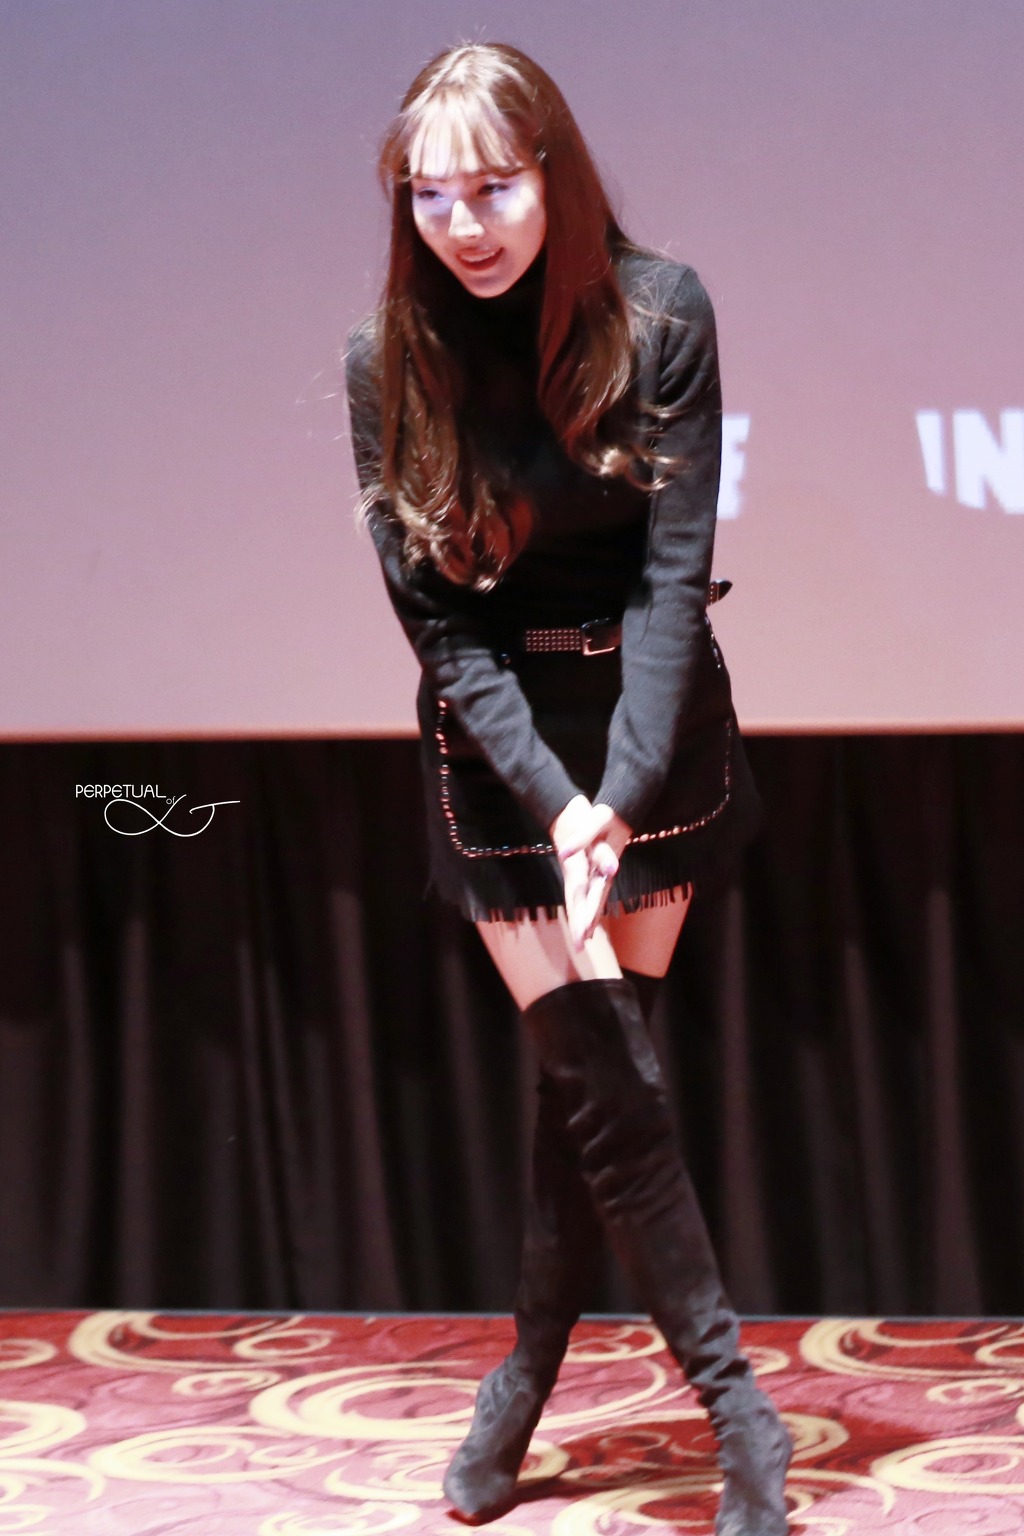 [PIC][07-11-2015]Jessica tham dự buổi Fansign cho dòng mỹ phẩm "J.ESTINA RED" tại "Myeongdong Lotte Cinema" vào chiều nay 2726C03B563E43E216E0CD